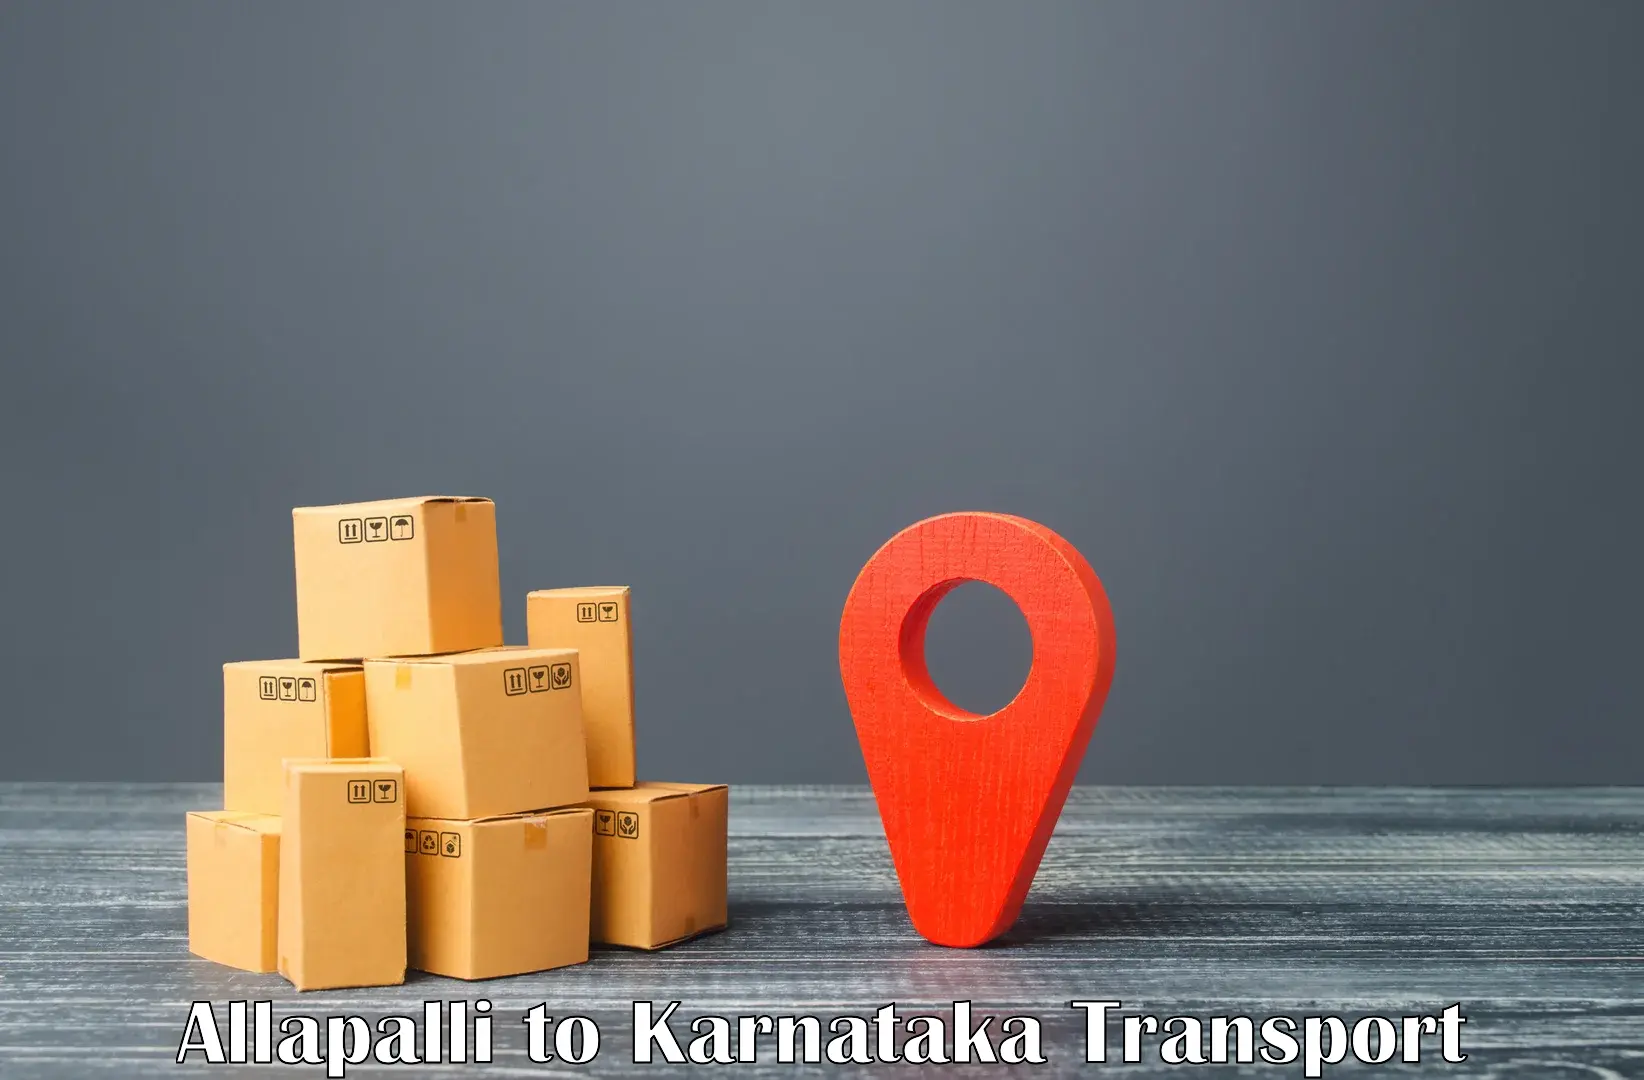 Two wheeler transport services Allapalli to Karnataka